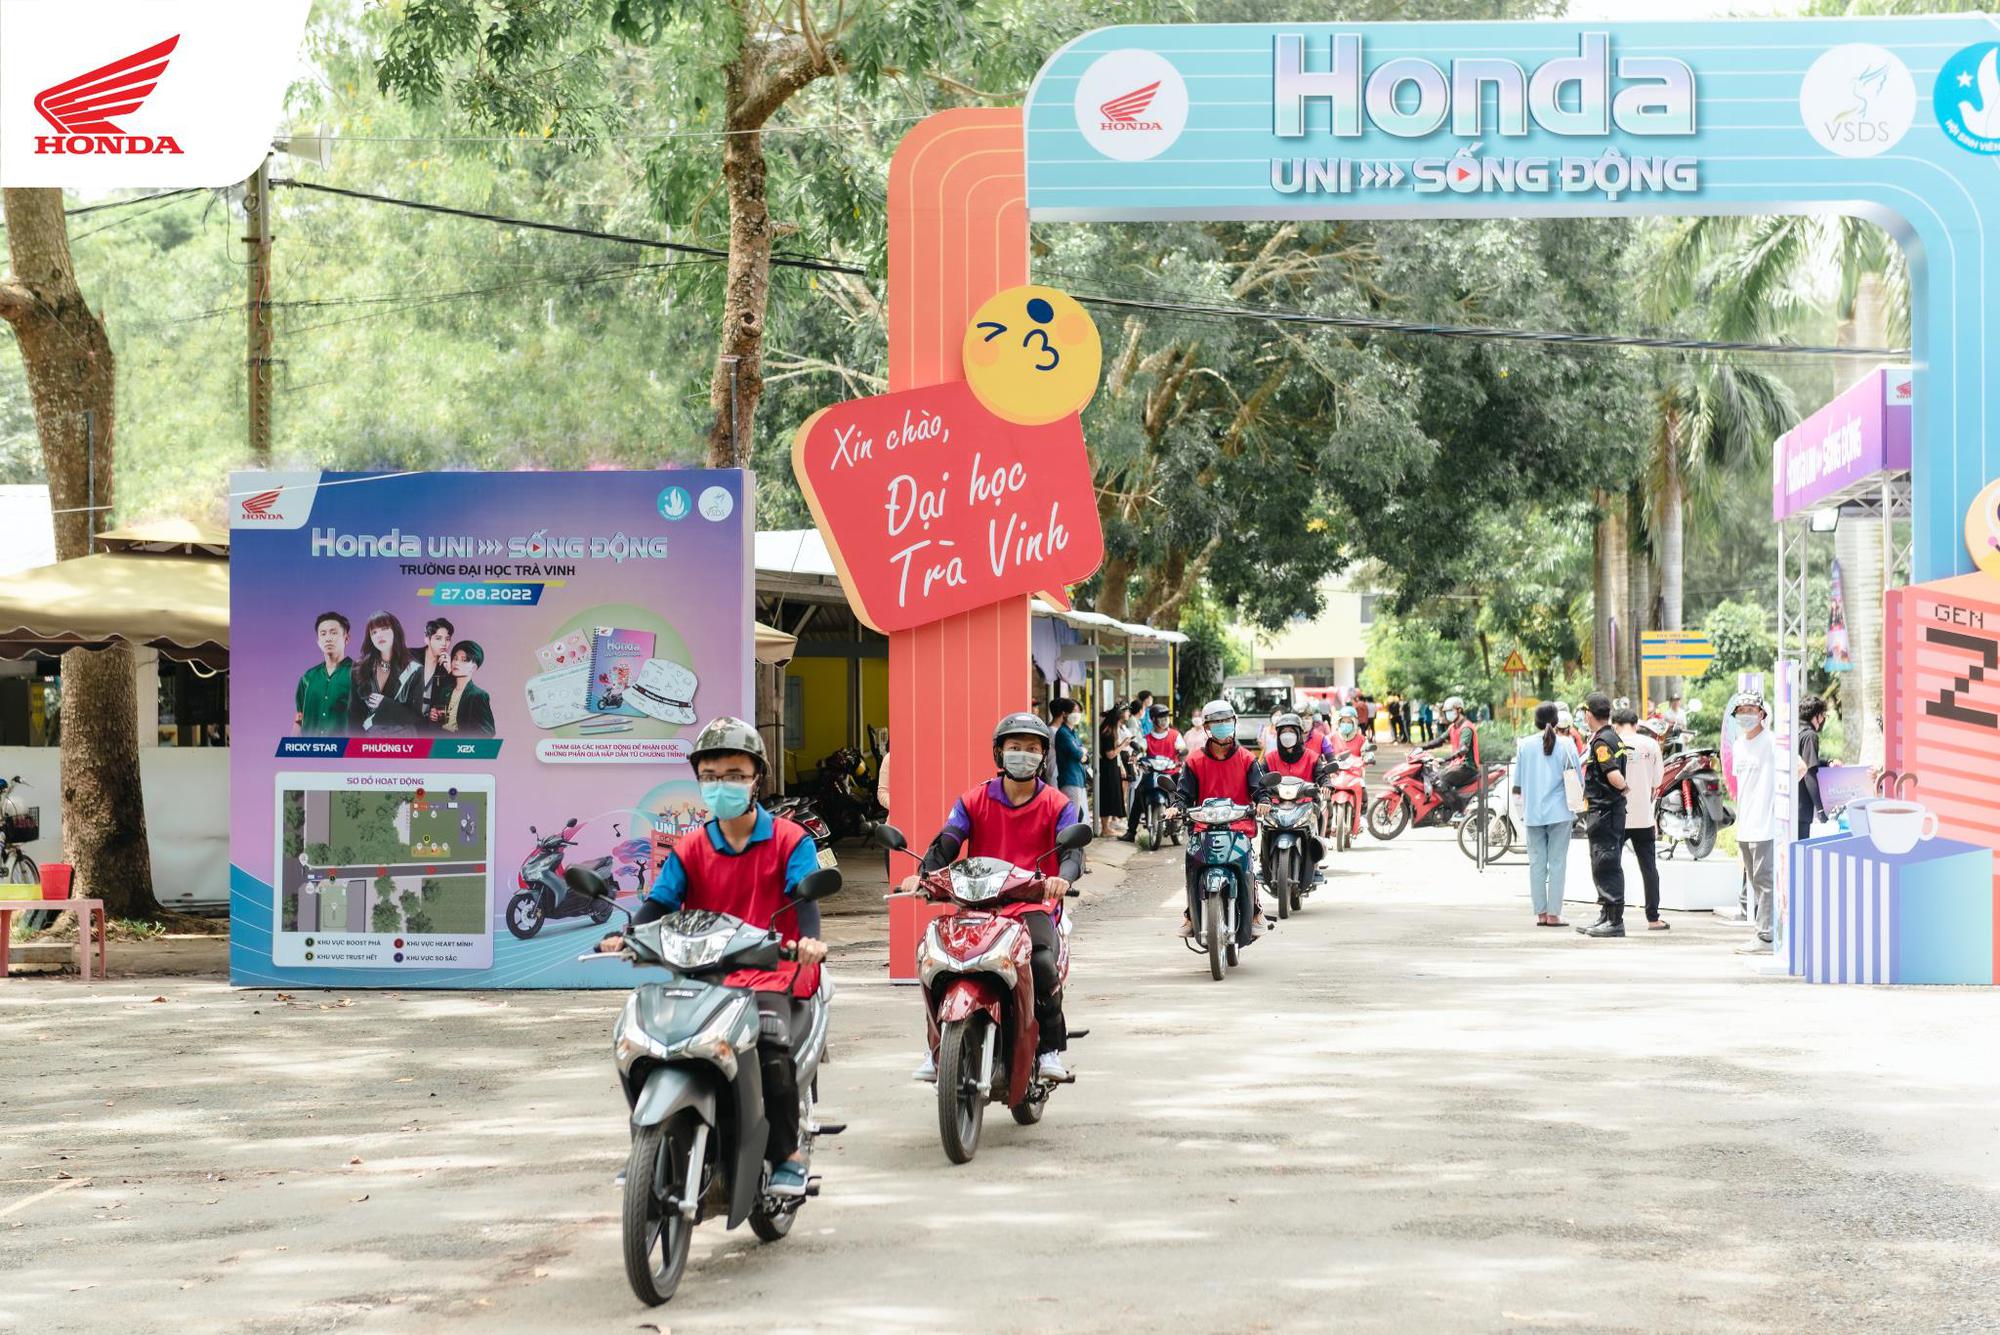 Honda Việt Nam chính thức khởi hành tour “Honda UNI-Sống Động” - chuỗi sự kiện đa sắc màu, độc bản dành cho sinh viên - Ảnh 1.